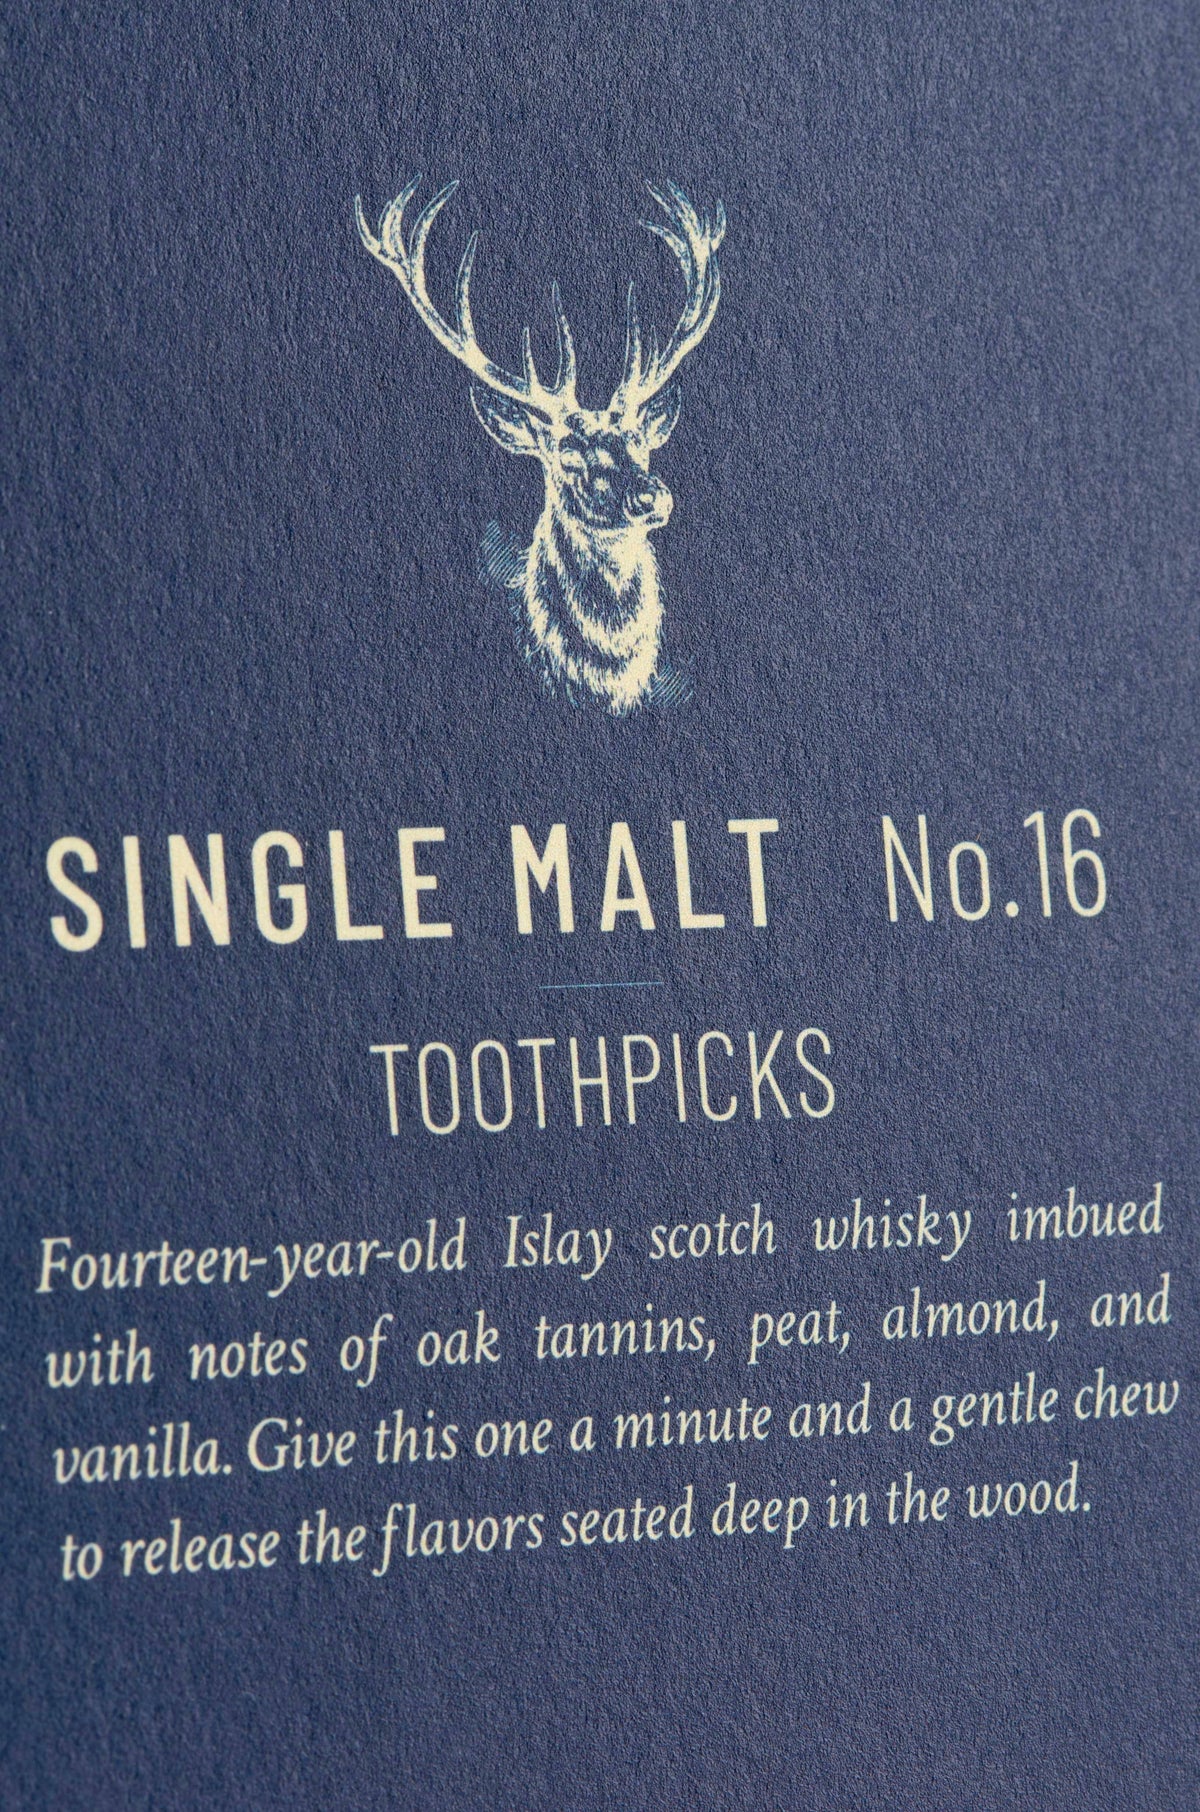 Single Malt No. 16 Toothpicks - Heart of the Home PA